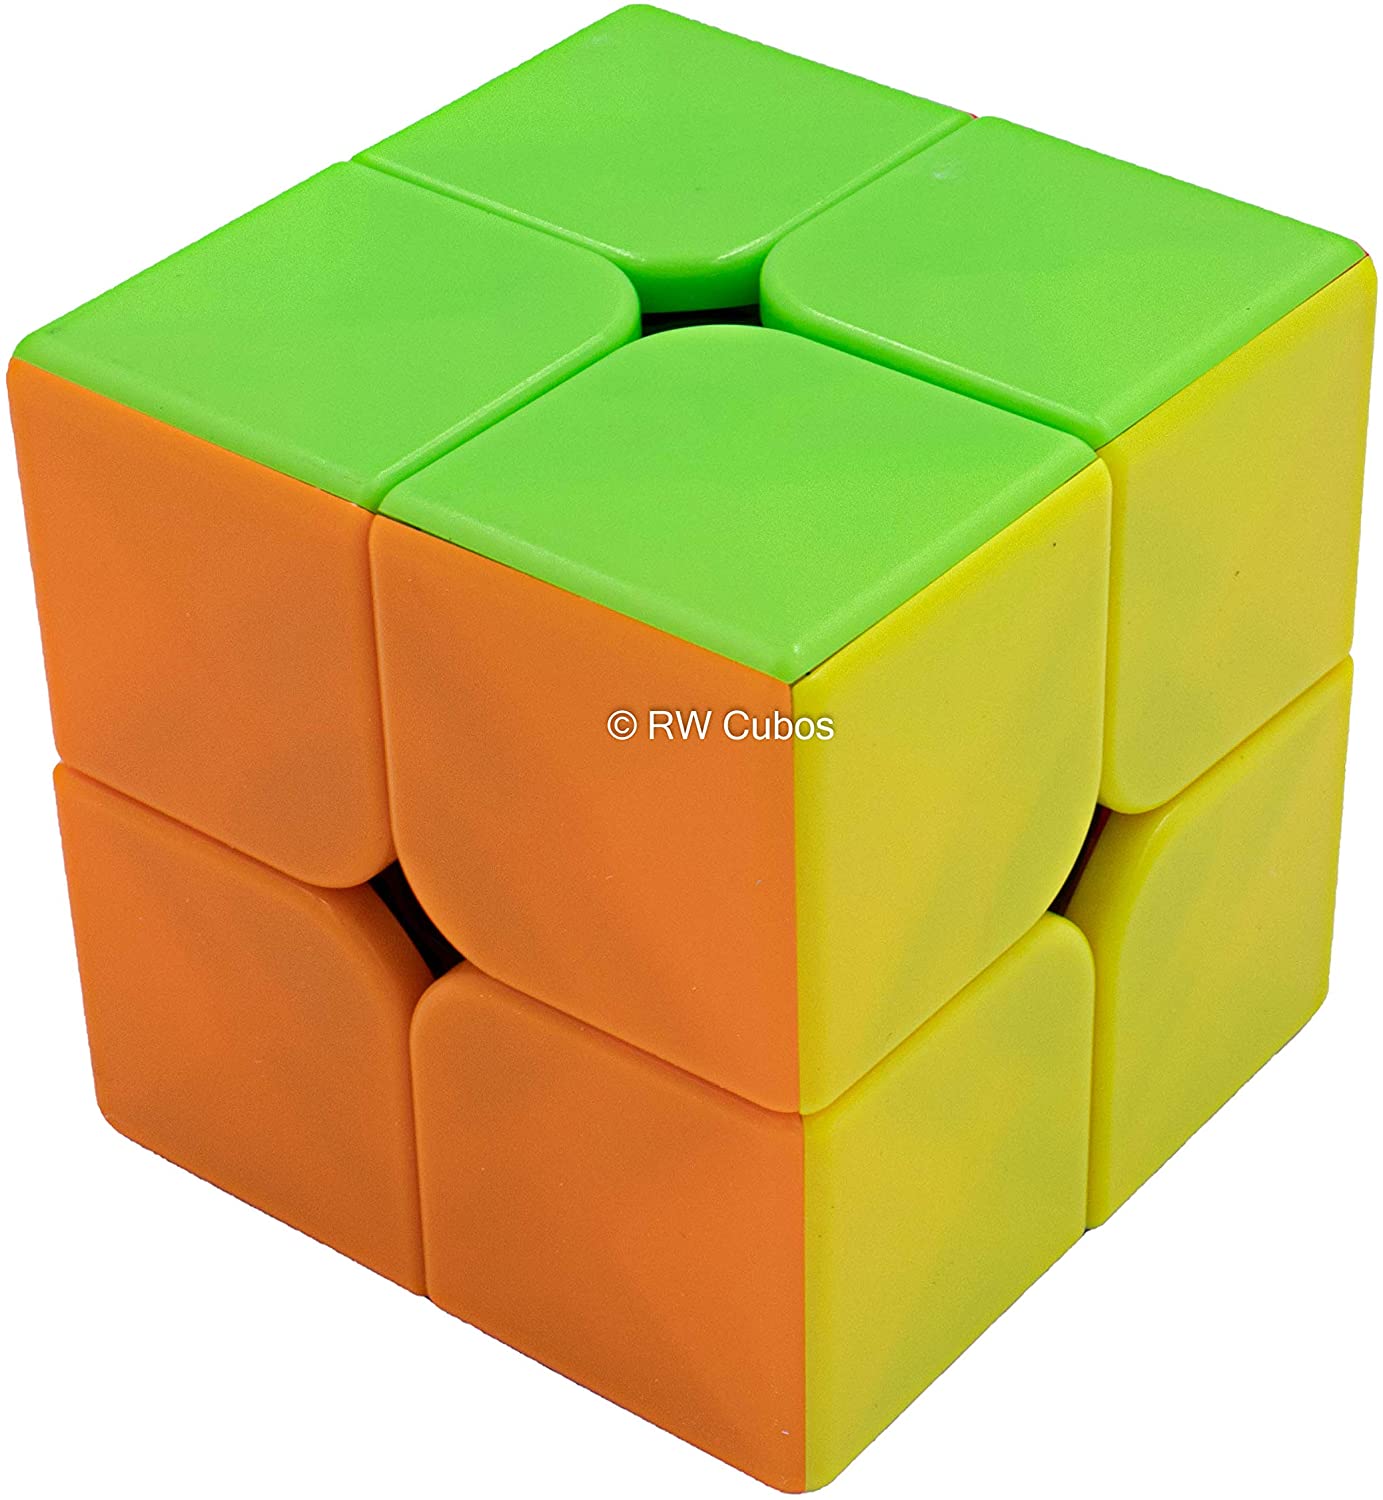 Cubo Magico 2X2 Colorido sem adesivo - Le biscuit